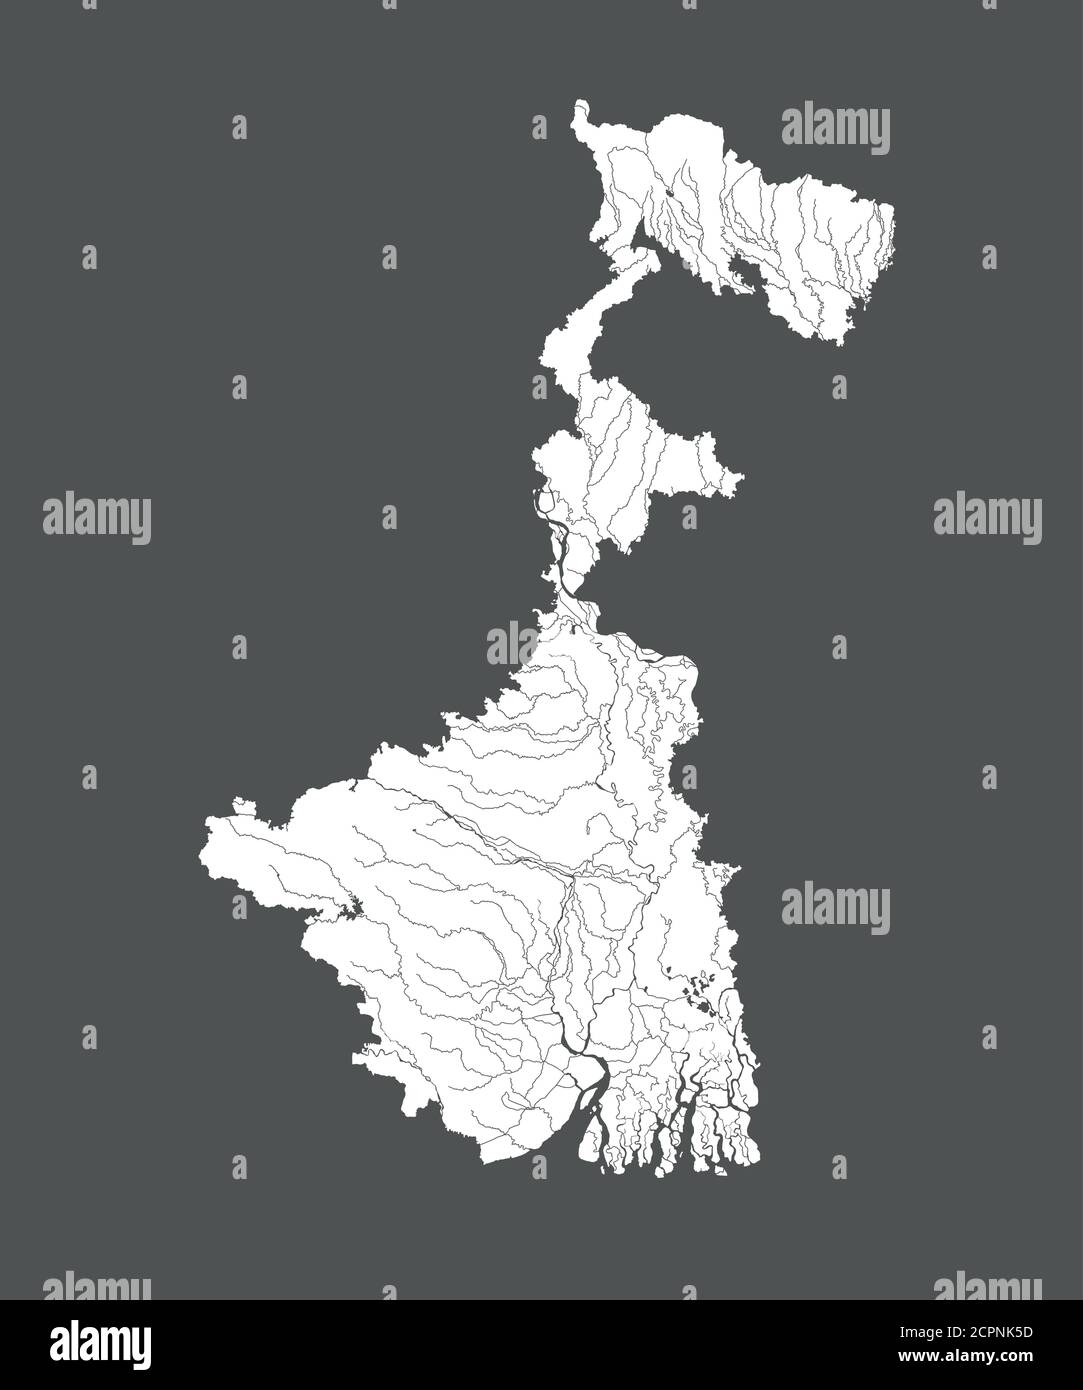 Stati dell'India - mappa del Bengala Occidentale. Fatto a mano. Fiumi e laghi sono mostrati. Per favore guarda le mie altre immagini di serie cartografiche - sono tutte molto de Illustrazione Vettoriale